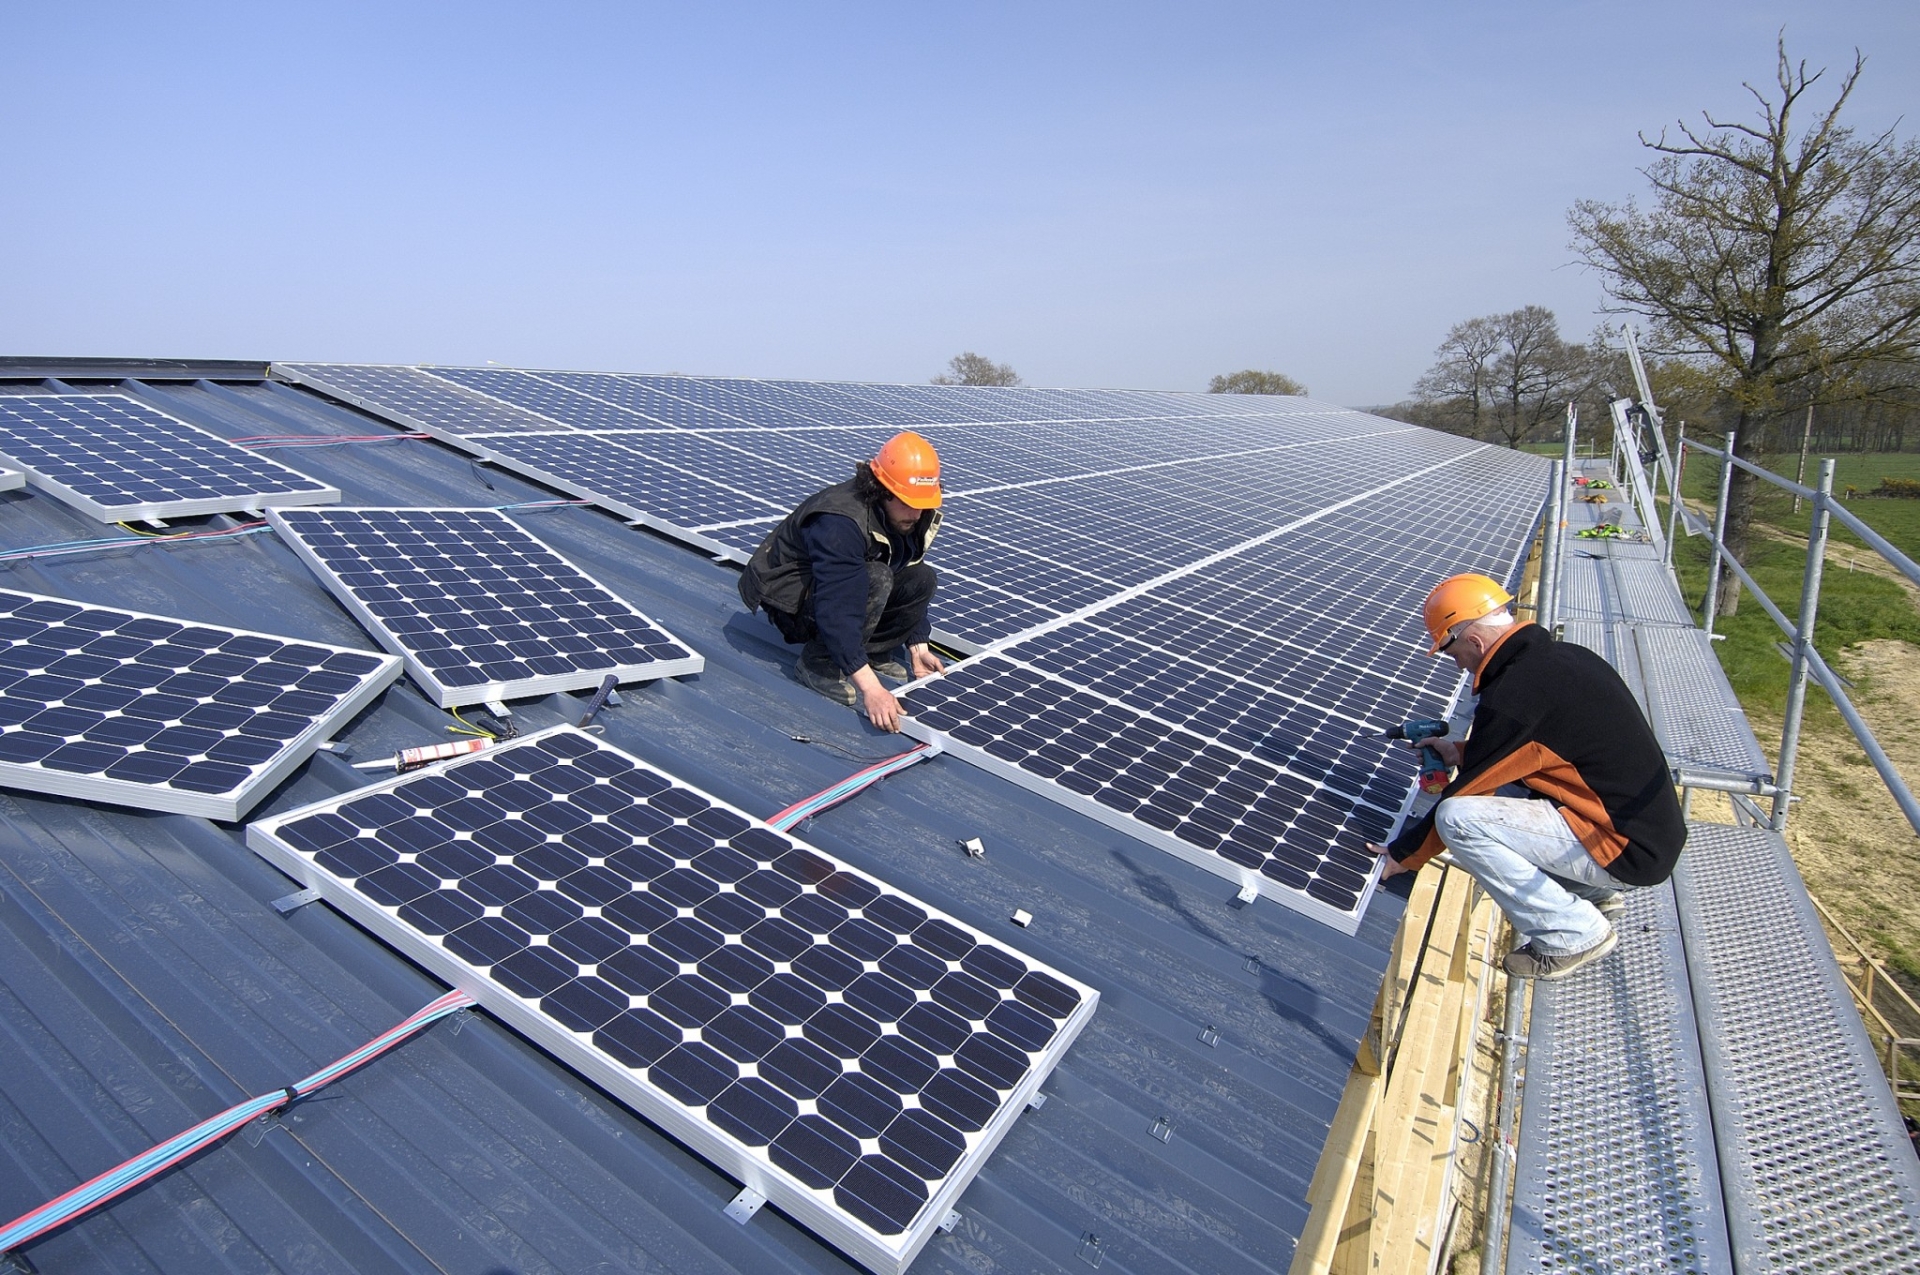 Installations photovoltaïques : faire les choses dans les règles